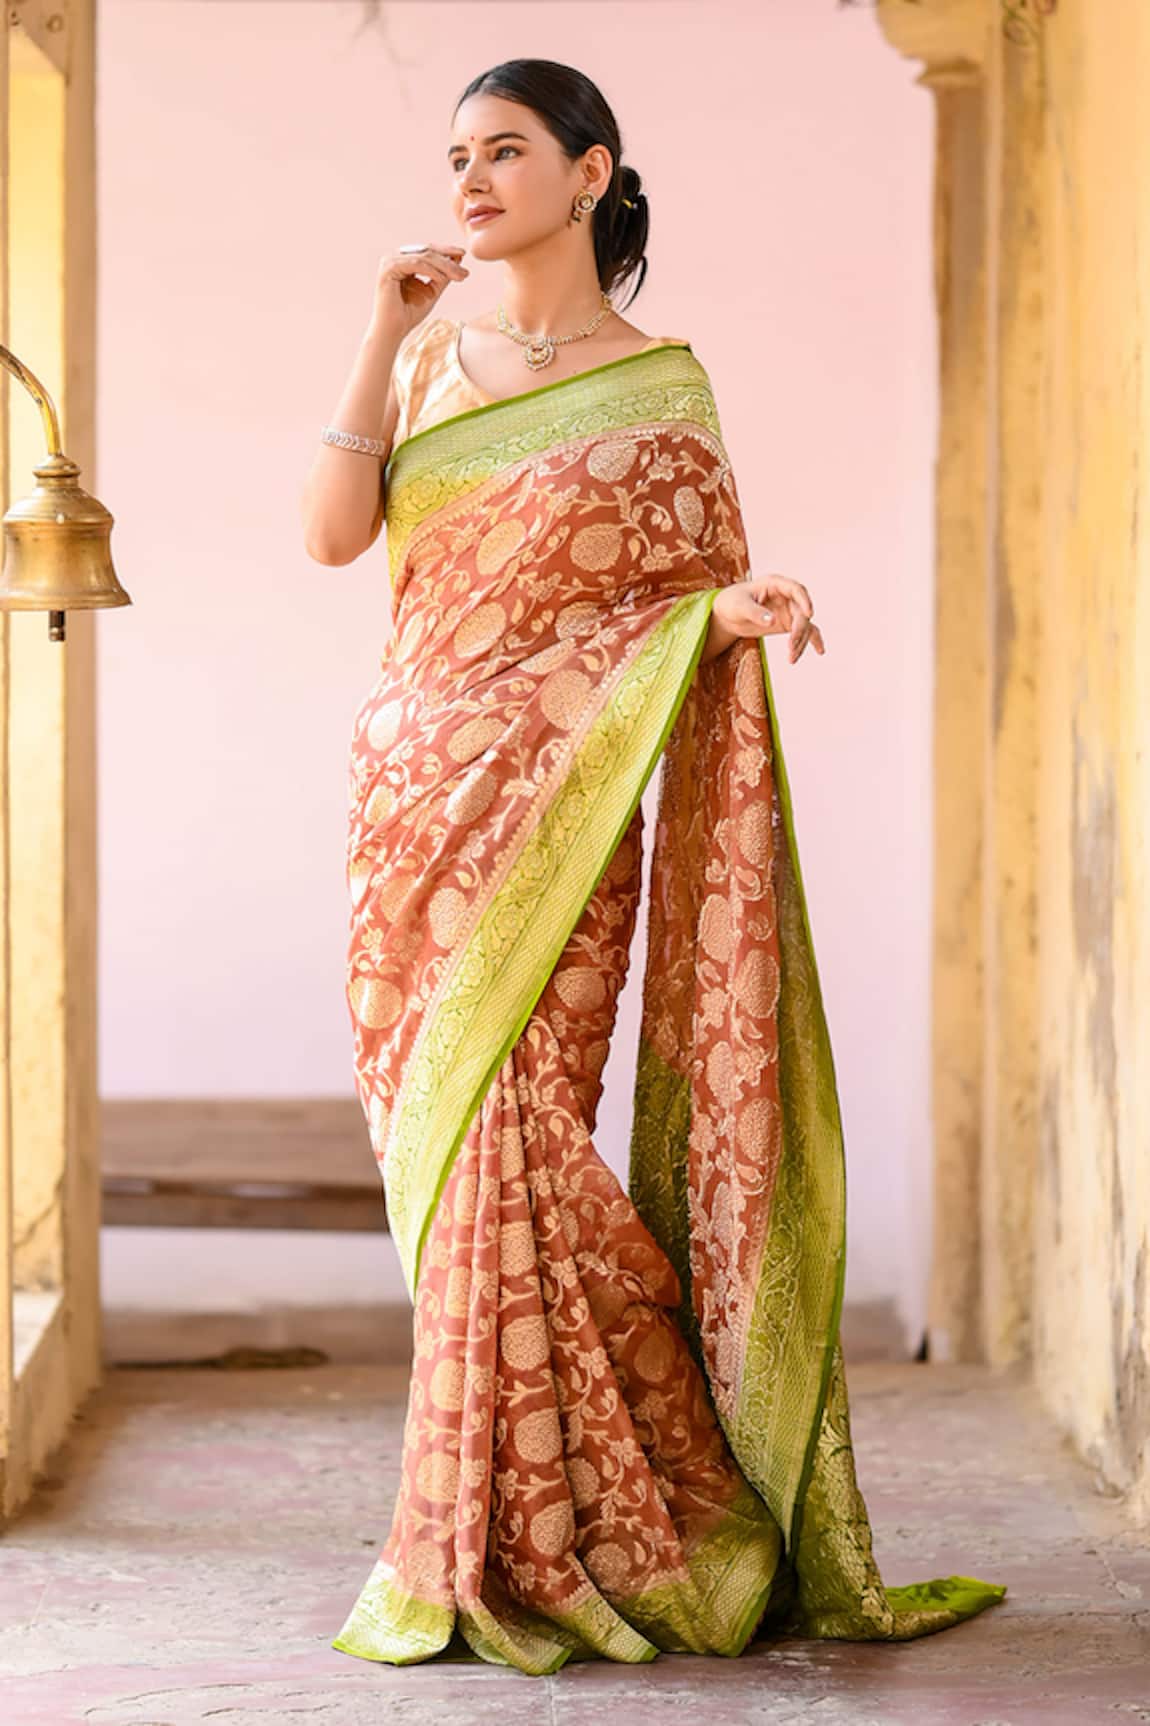 Naaritva India Floral Jaal Pattern Banarasi Saree With Running Blouse